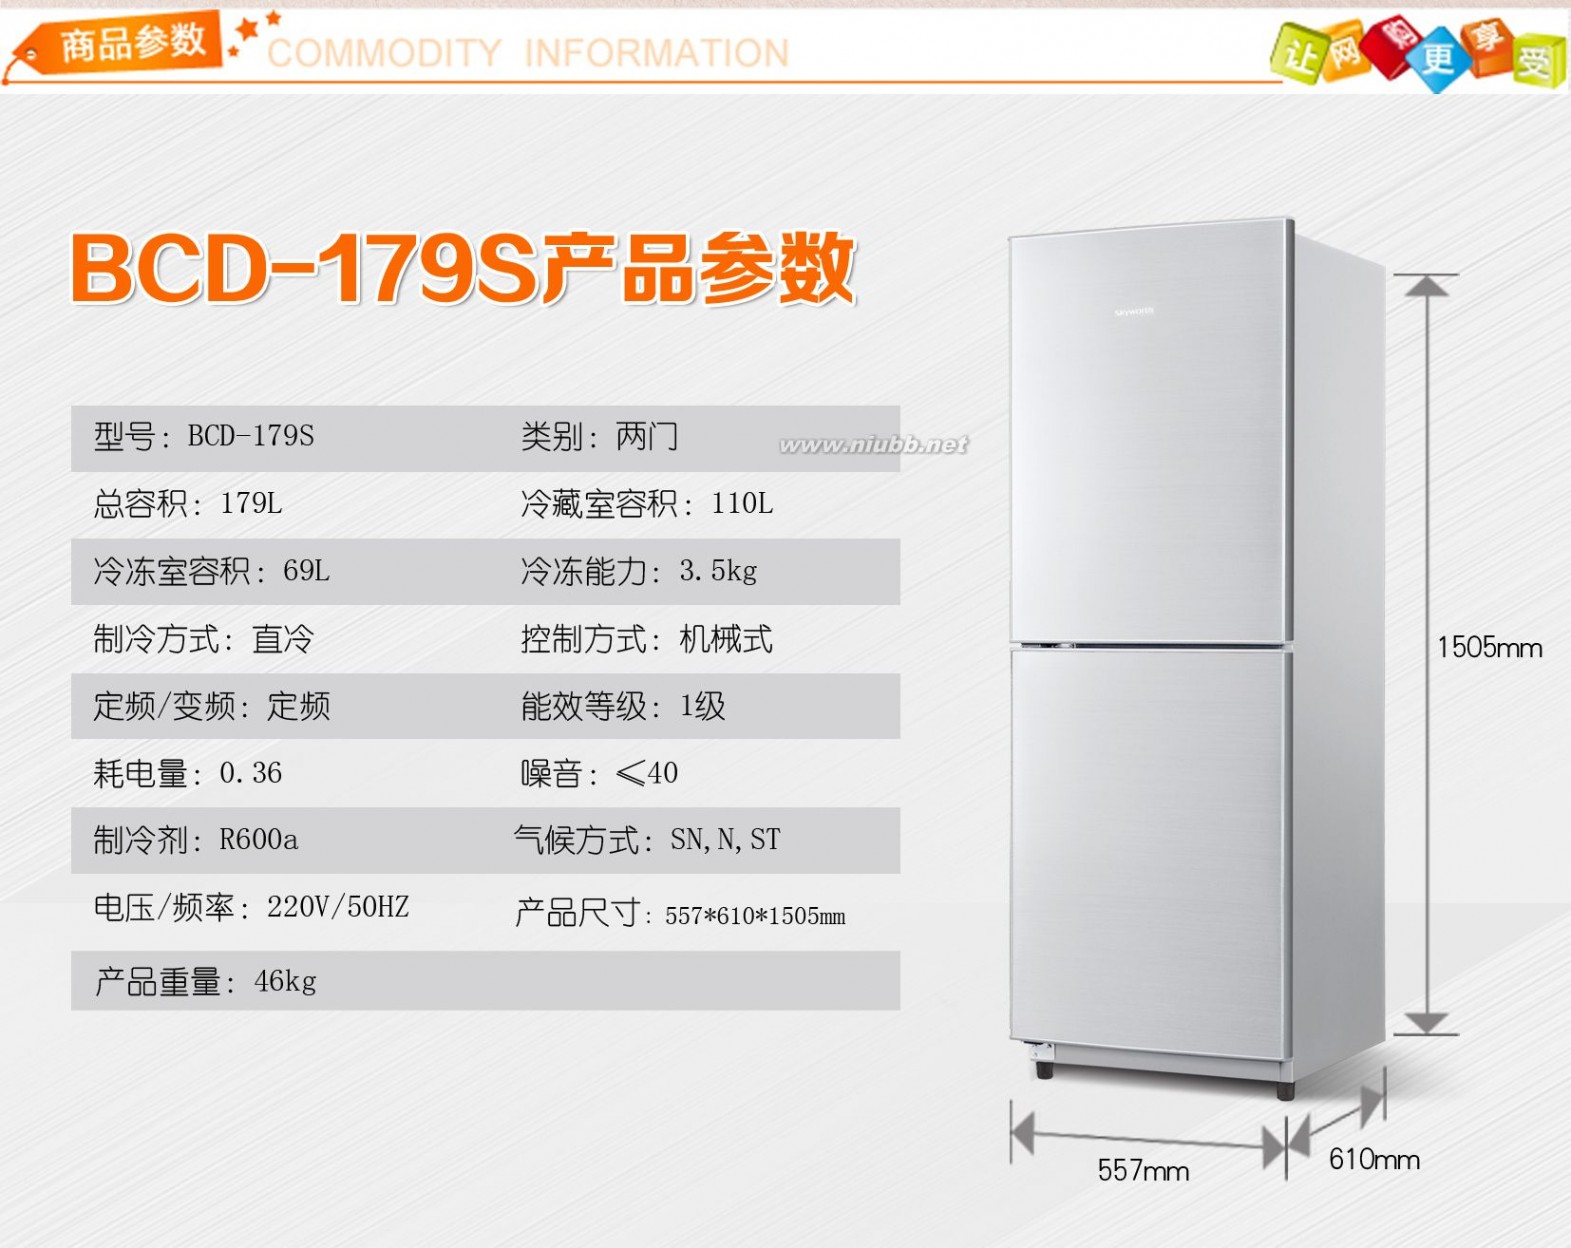 冰箱尺寸 冰箱尺寸规格有哪些 如何购选冰箱尺寸